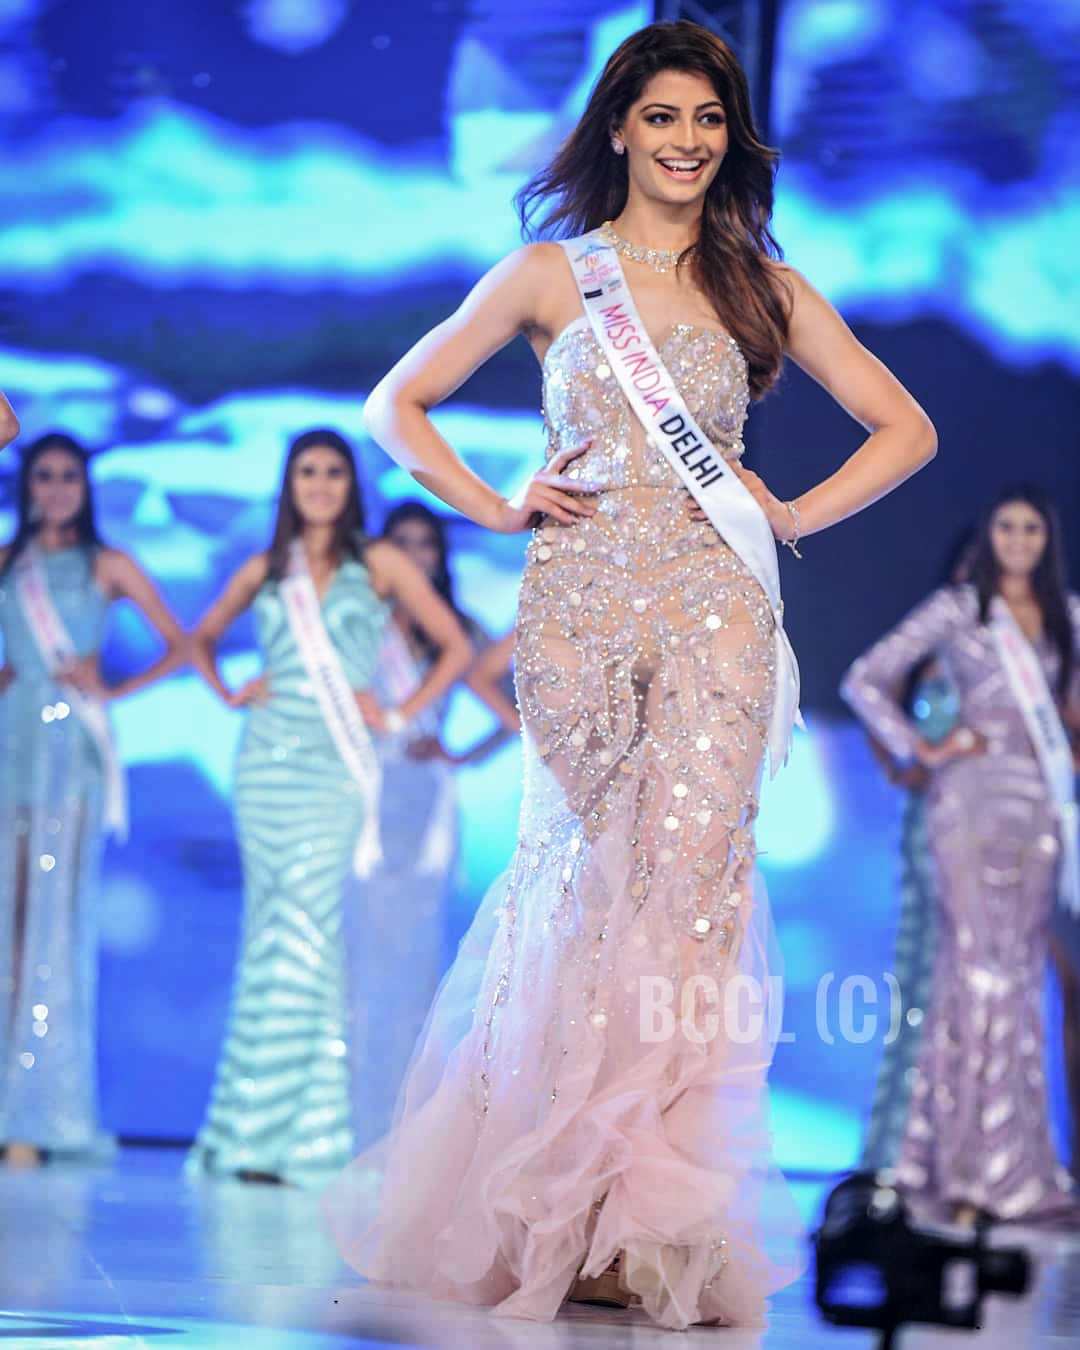 Mansi Sehgal walking performing a ramp walk after winning Miss India Delhi 2019